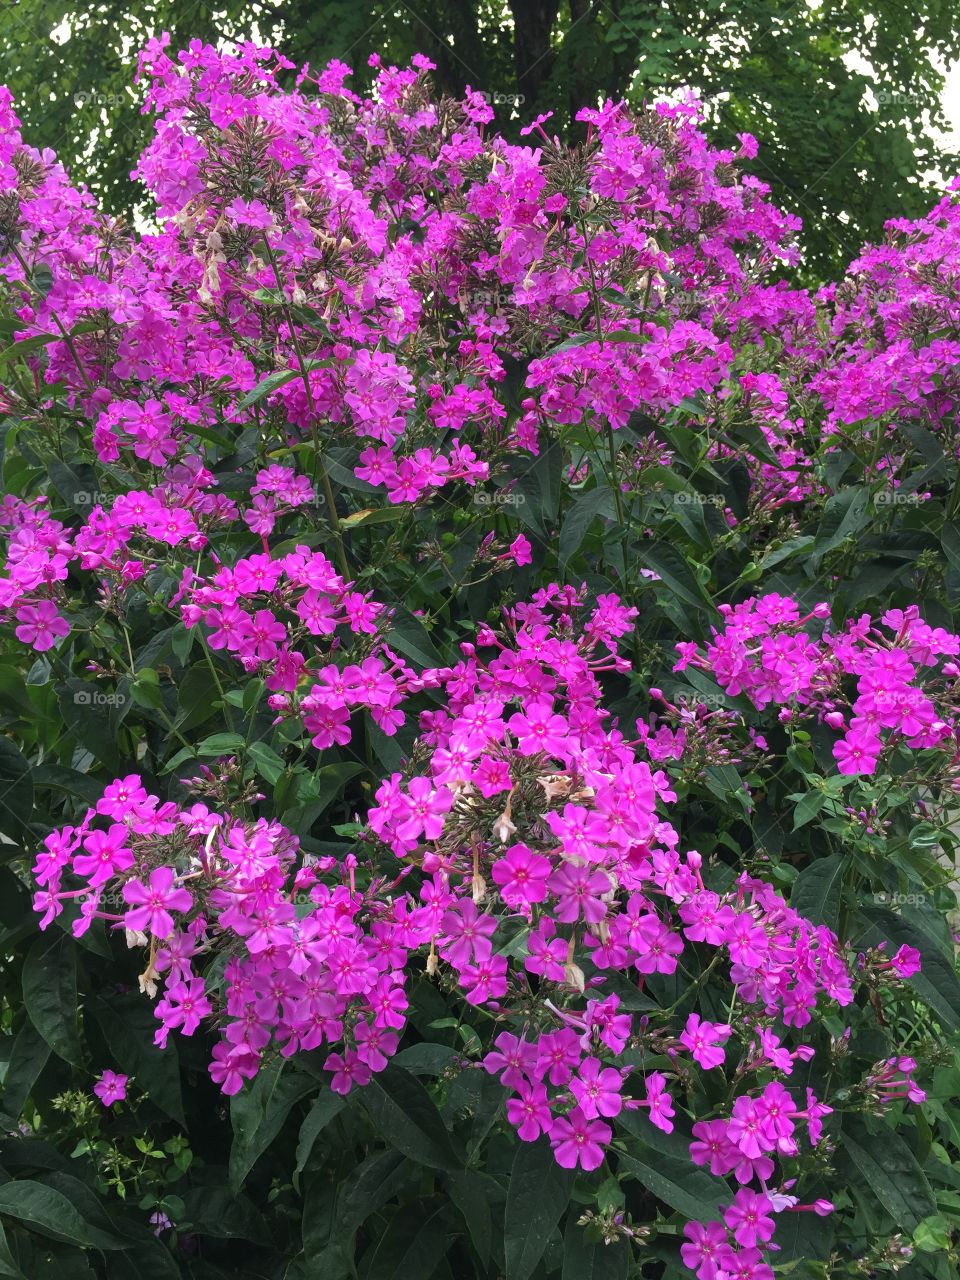 Purple flowers in neighbourhood on a summer day